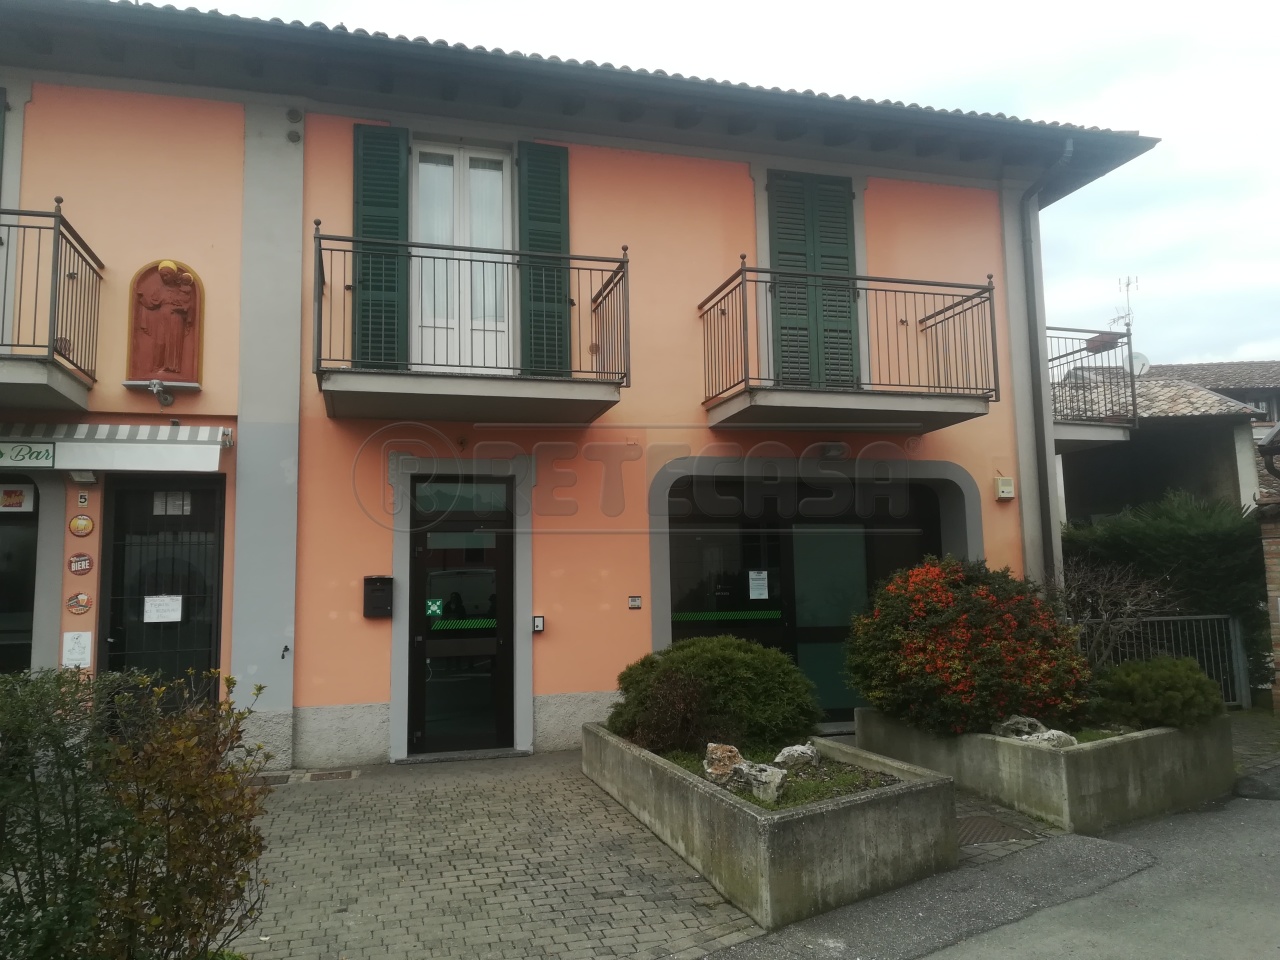 Negozio / Locale in affitto a Campagnola Cremasca, 3 locali, prezzo € 550 | PortaleAgenzieImmobiliari.it